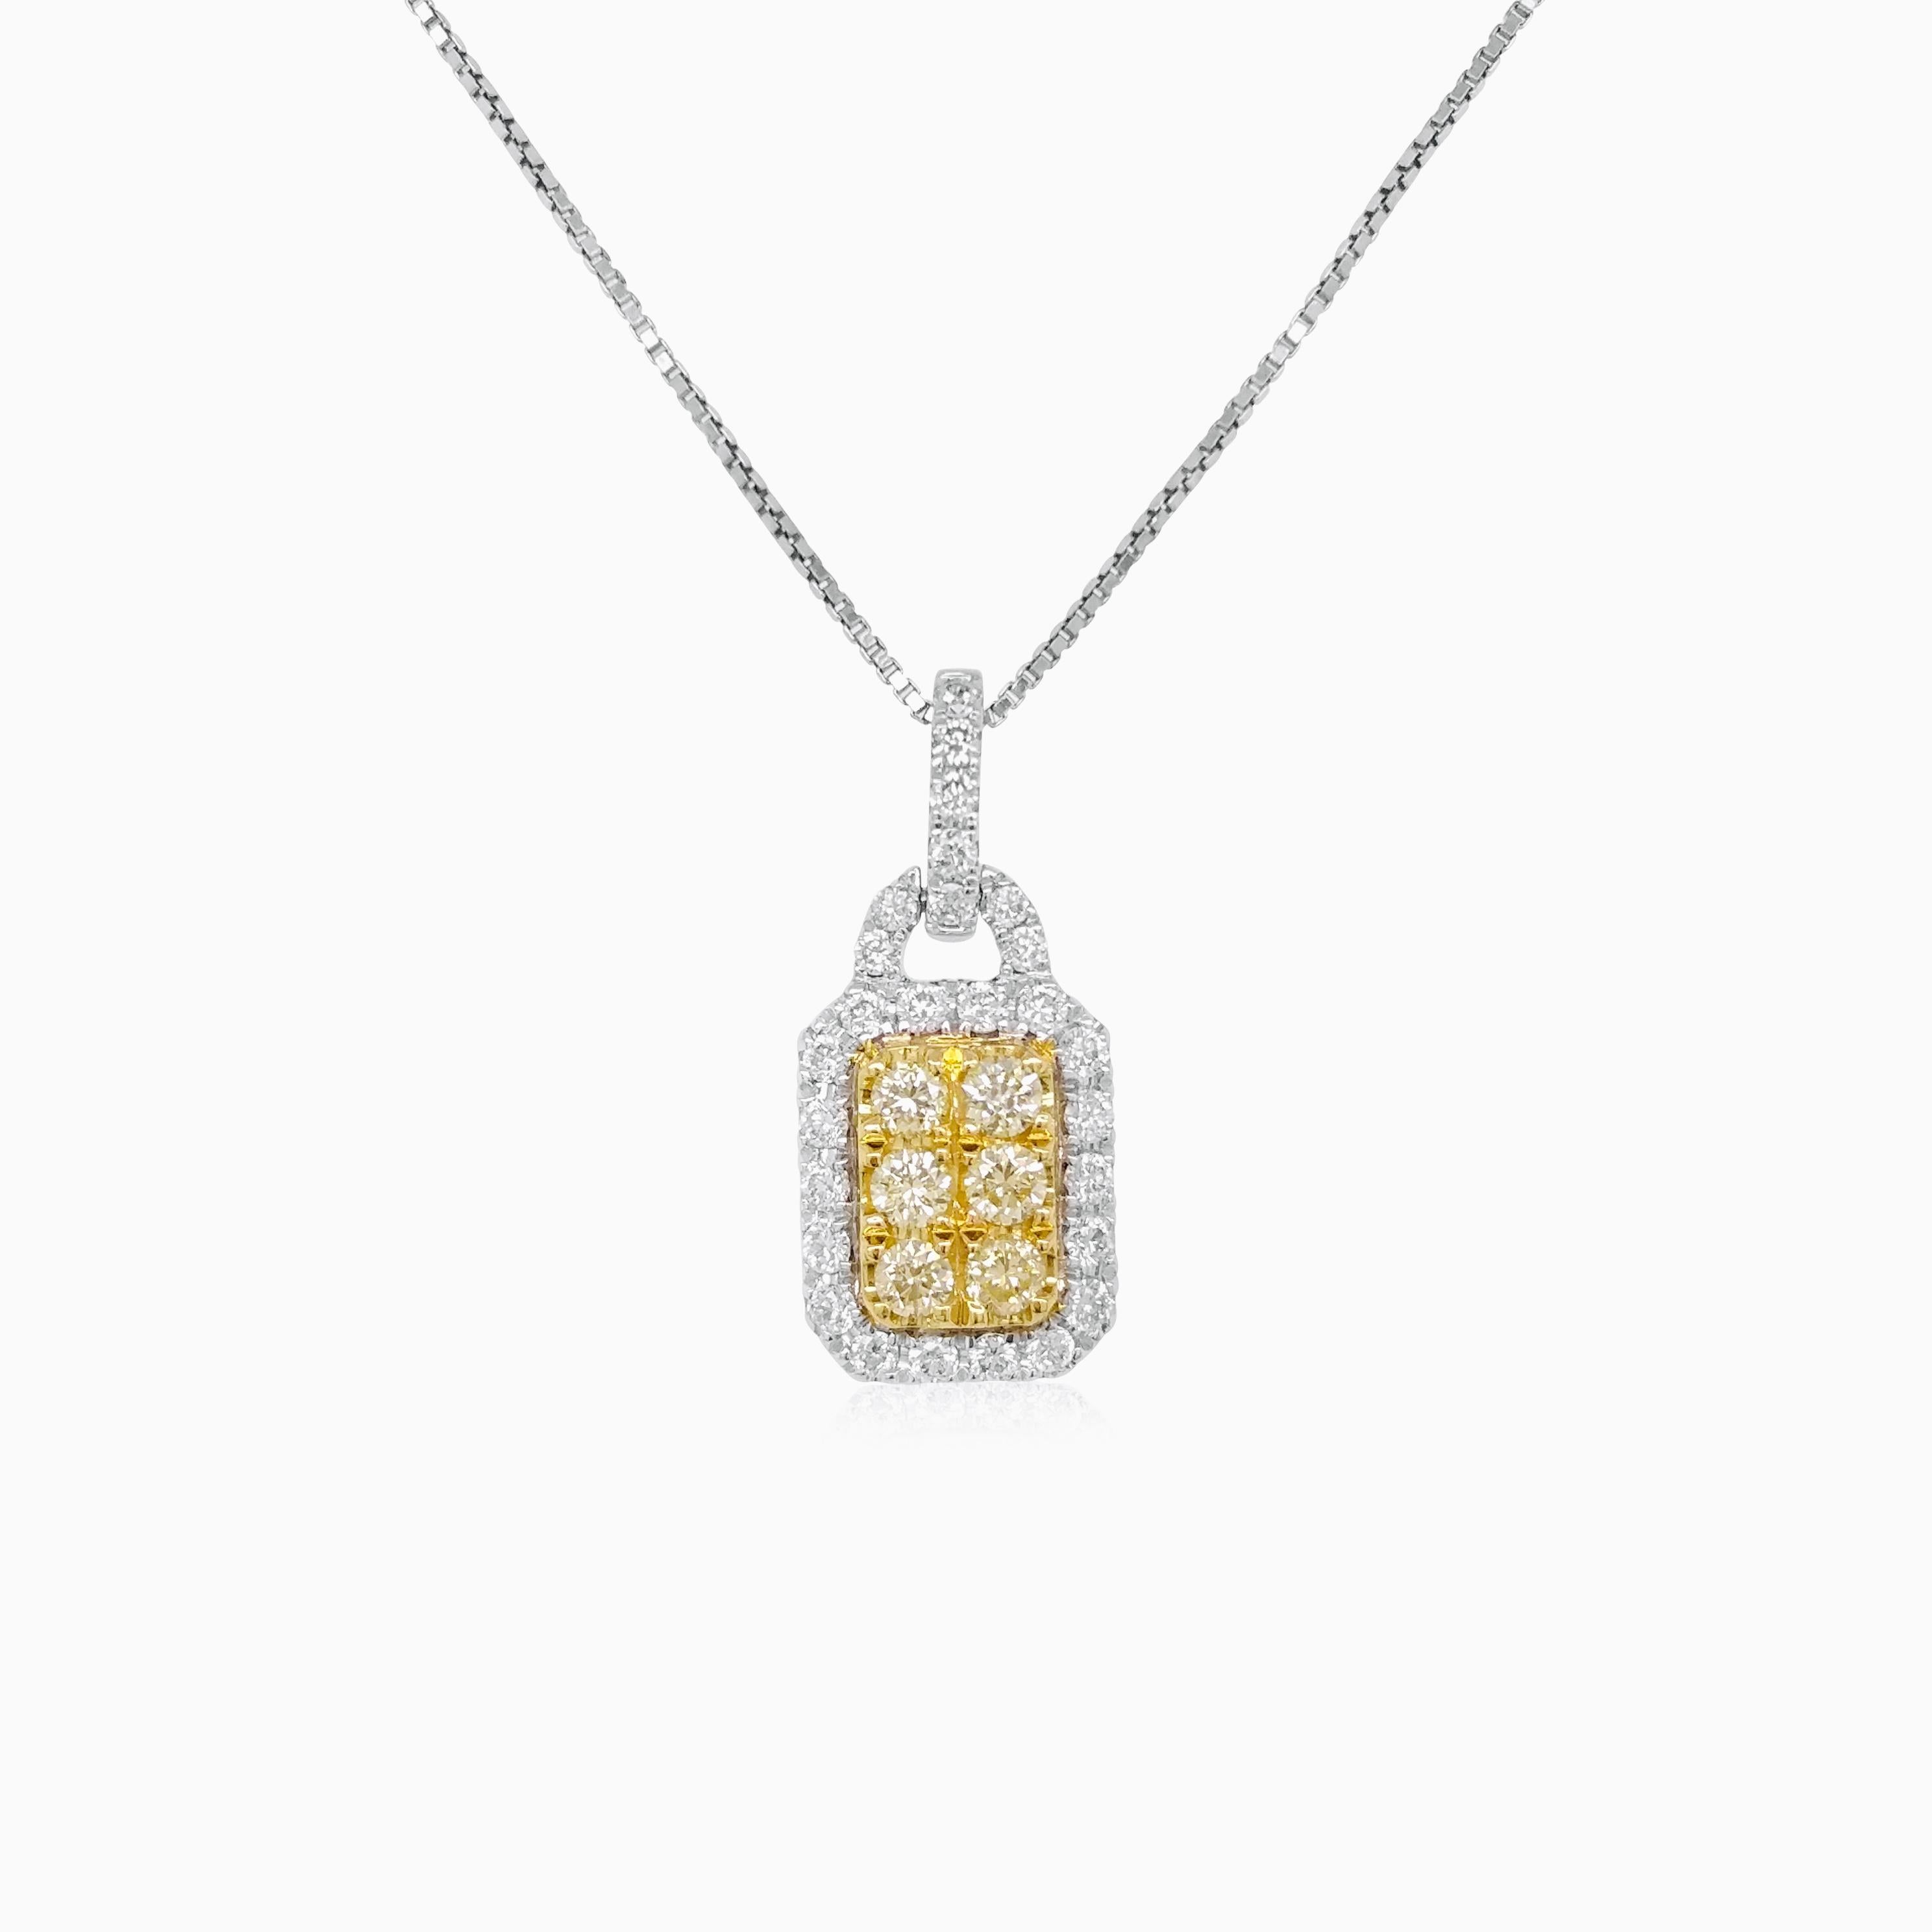 Collier pendentif composé de diamants jaunes naturels et de diamants blancs, sertis en or. Une pièce classique au look charmeur.

Diamants jaunes - 0,14 cts
Diamants blancs - 0,17 cts


HYT Jewelry est une société privée dont le siège se trouve à